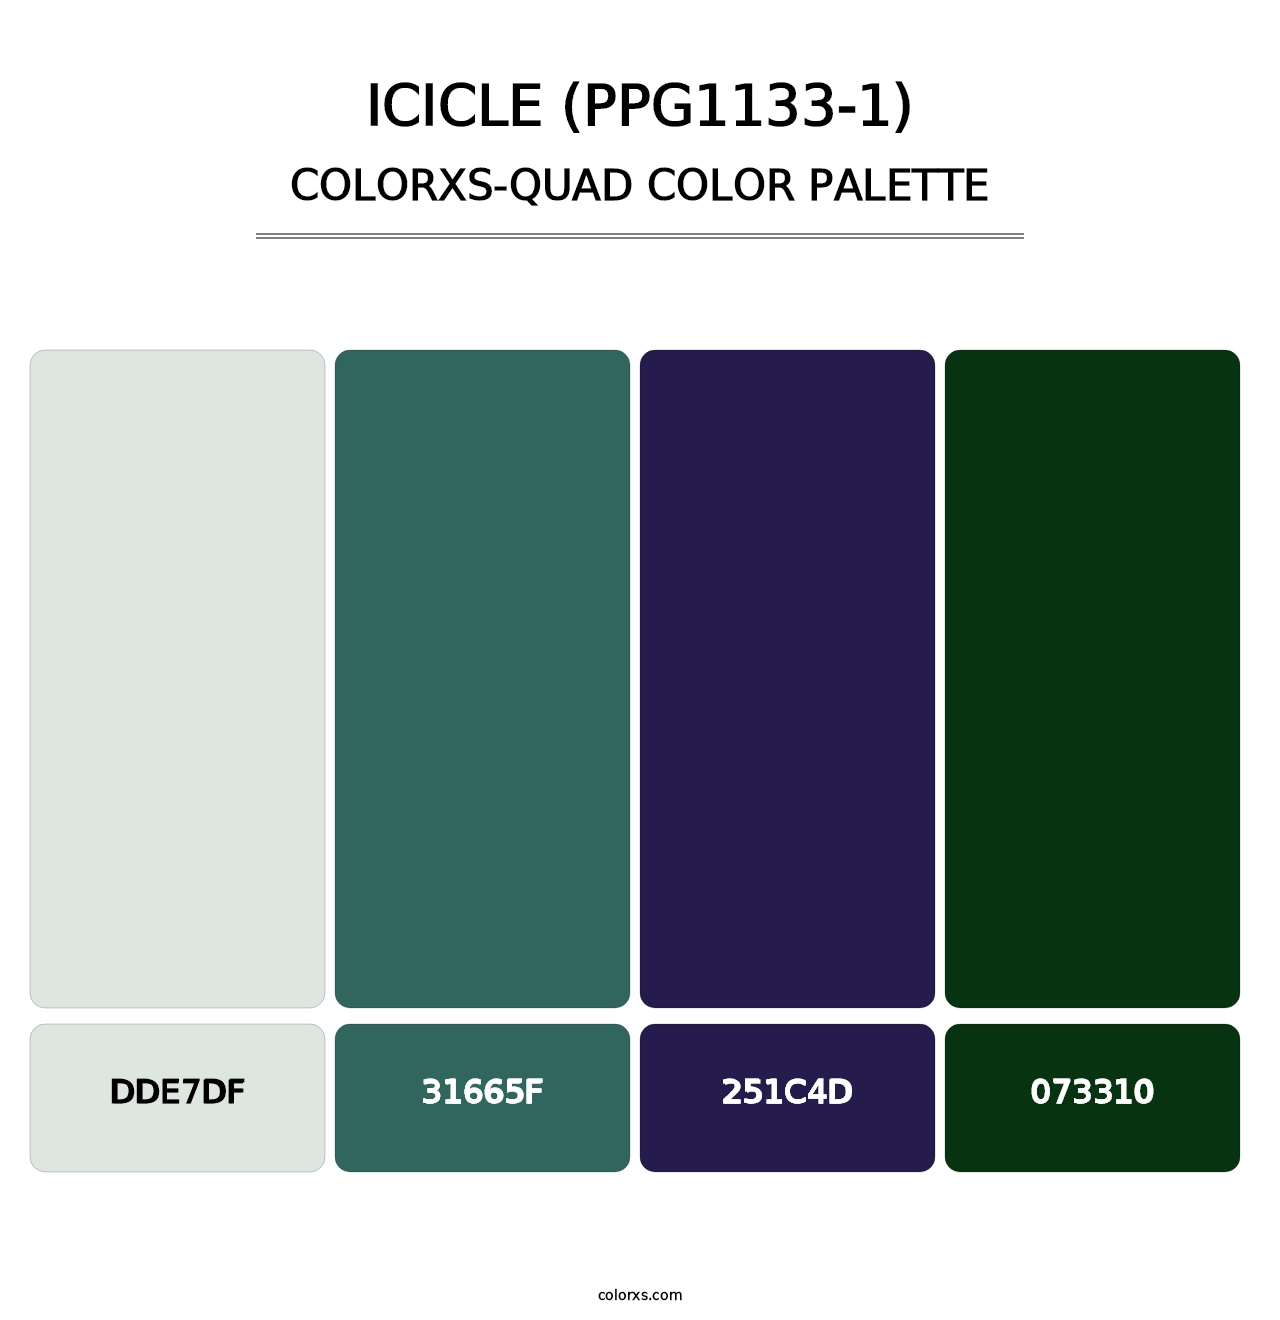 Icicle (PPG1133-1) - Colorxs Quad Palette